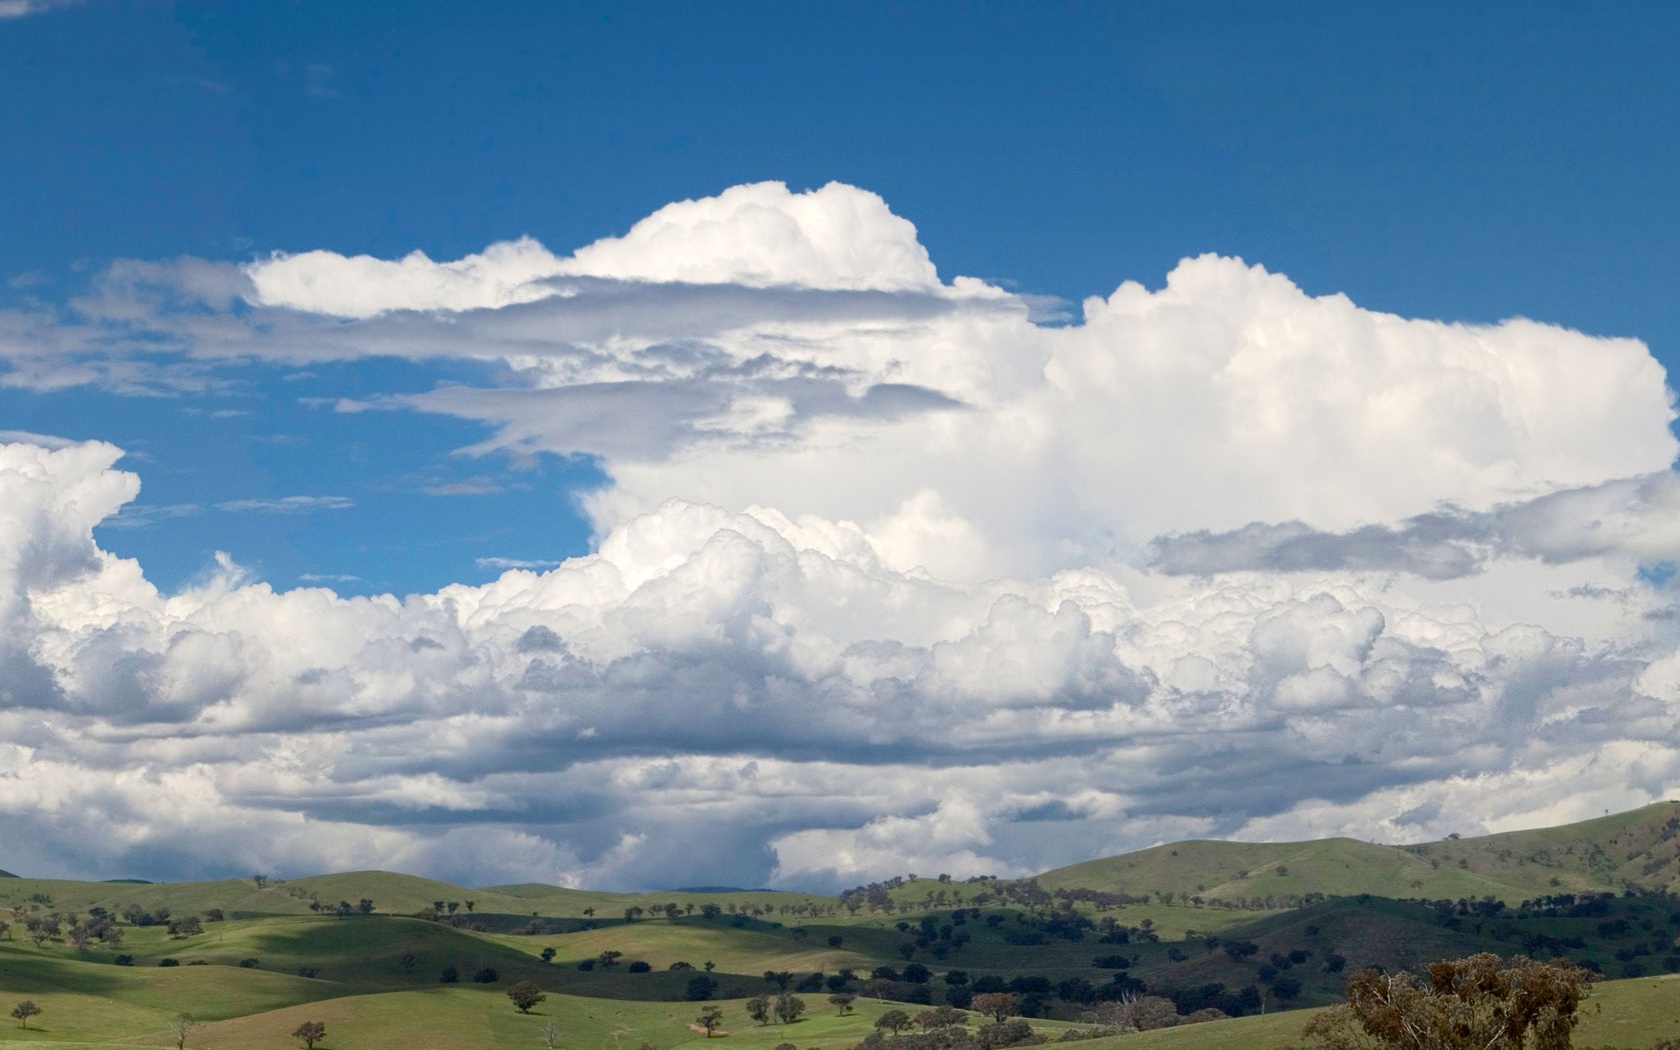 File:Cumulus clouds wallpaper.jpg - Wikipedia